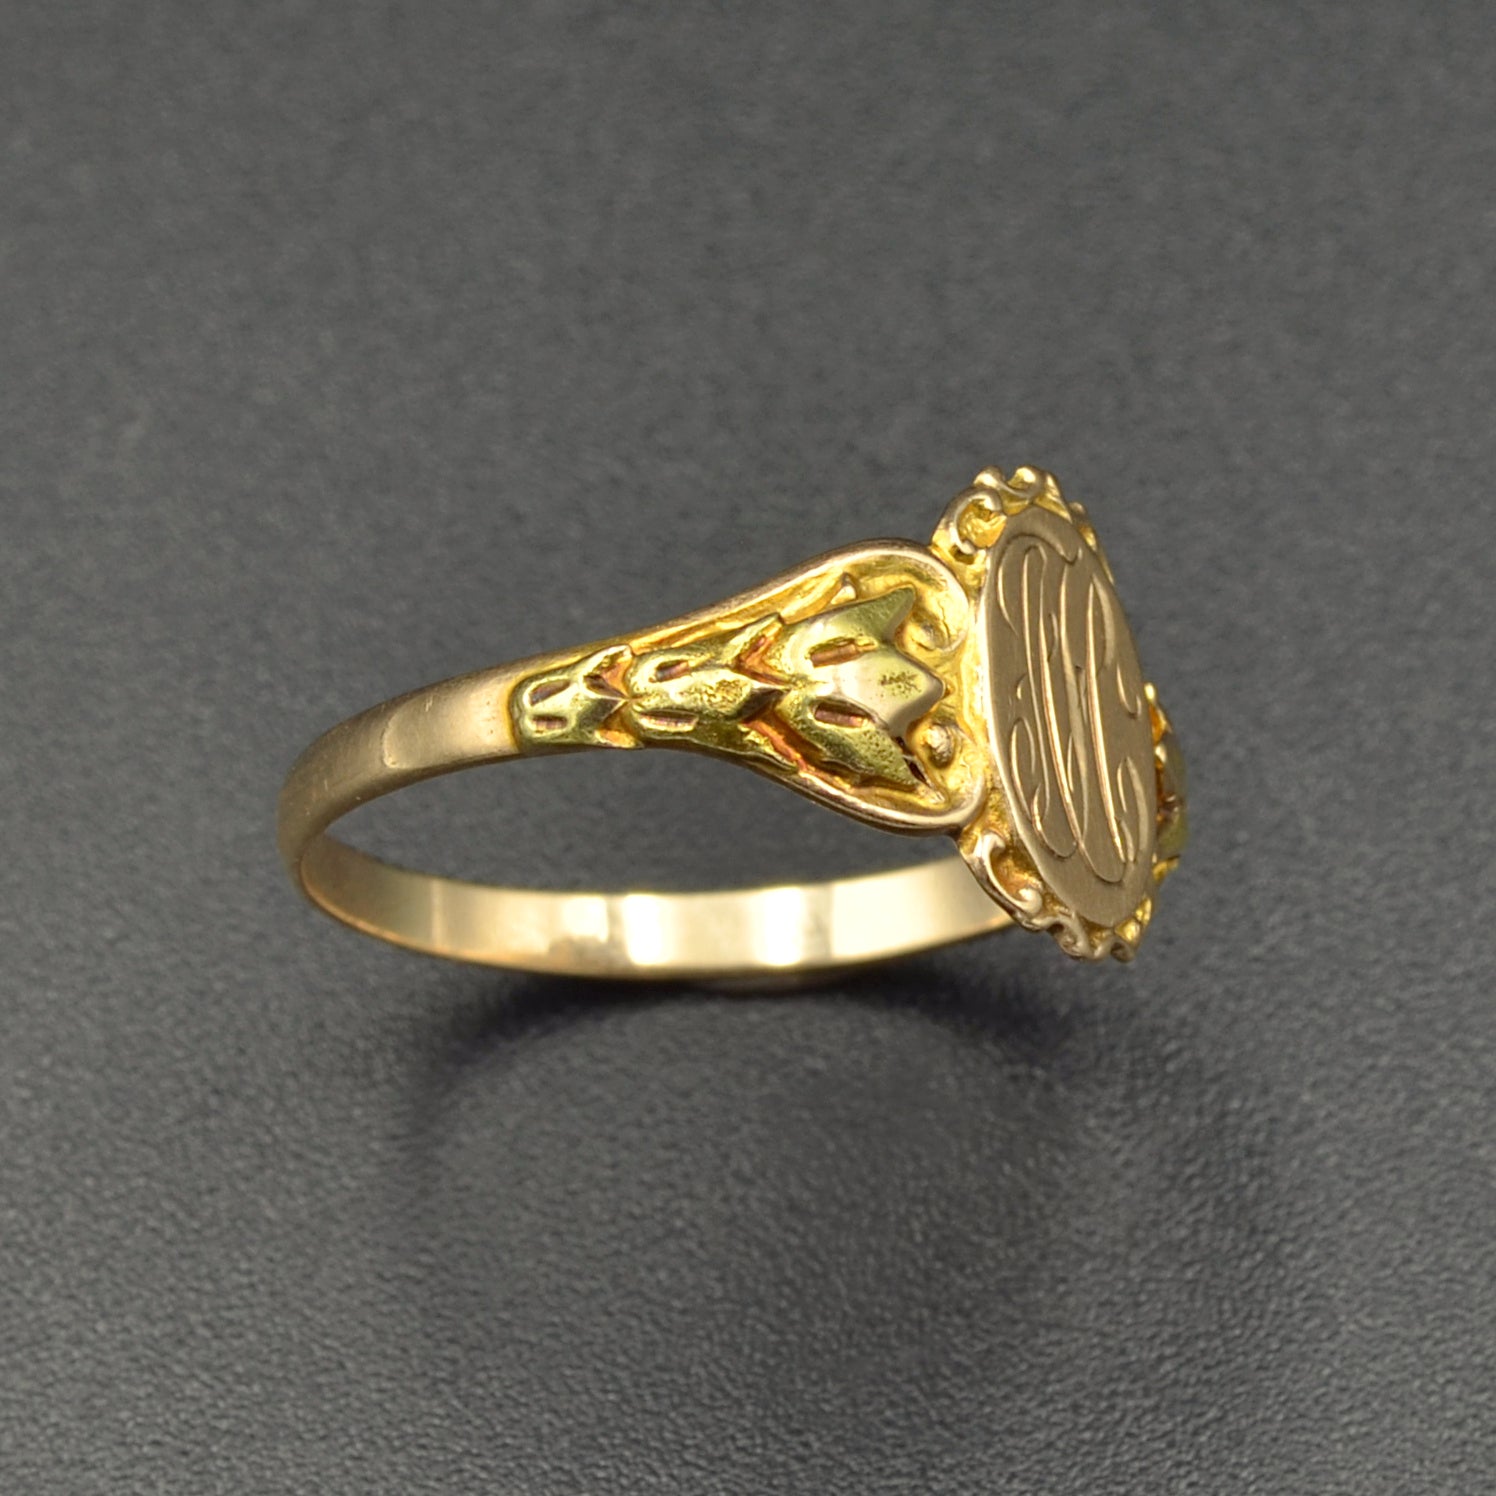 Antique Art Nouveau 10k Gold Signet Ring 